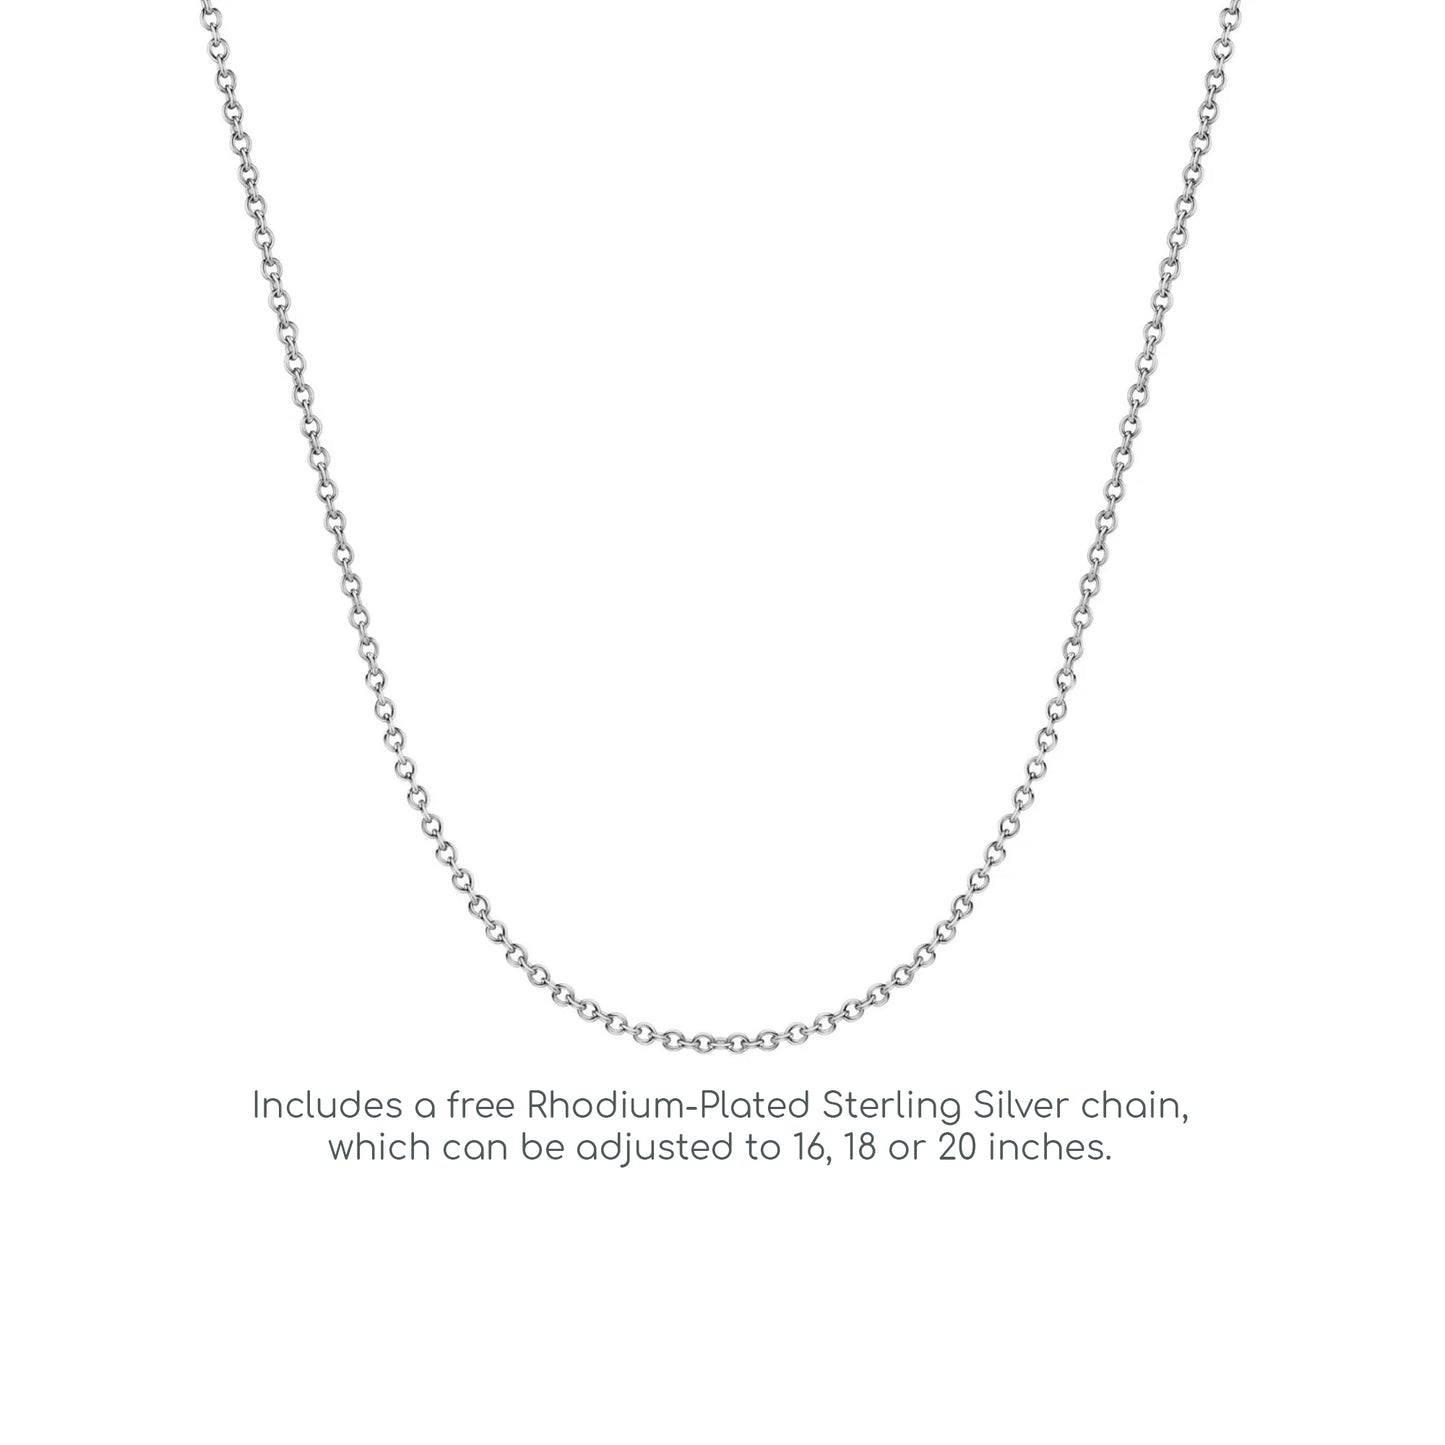 Silver  CZ Eternity Line Pendant Necklace 18 inch - SZP016